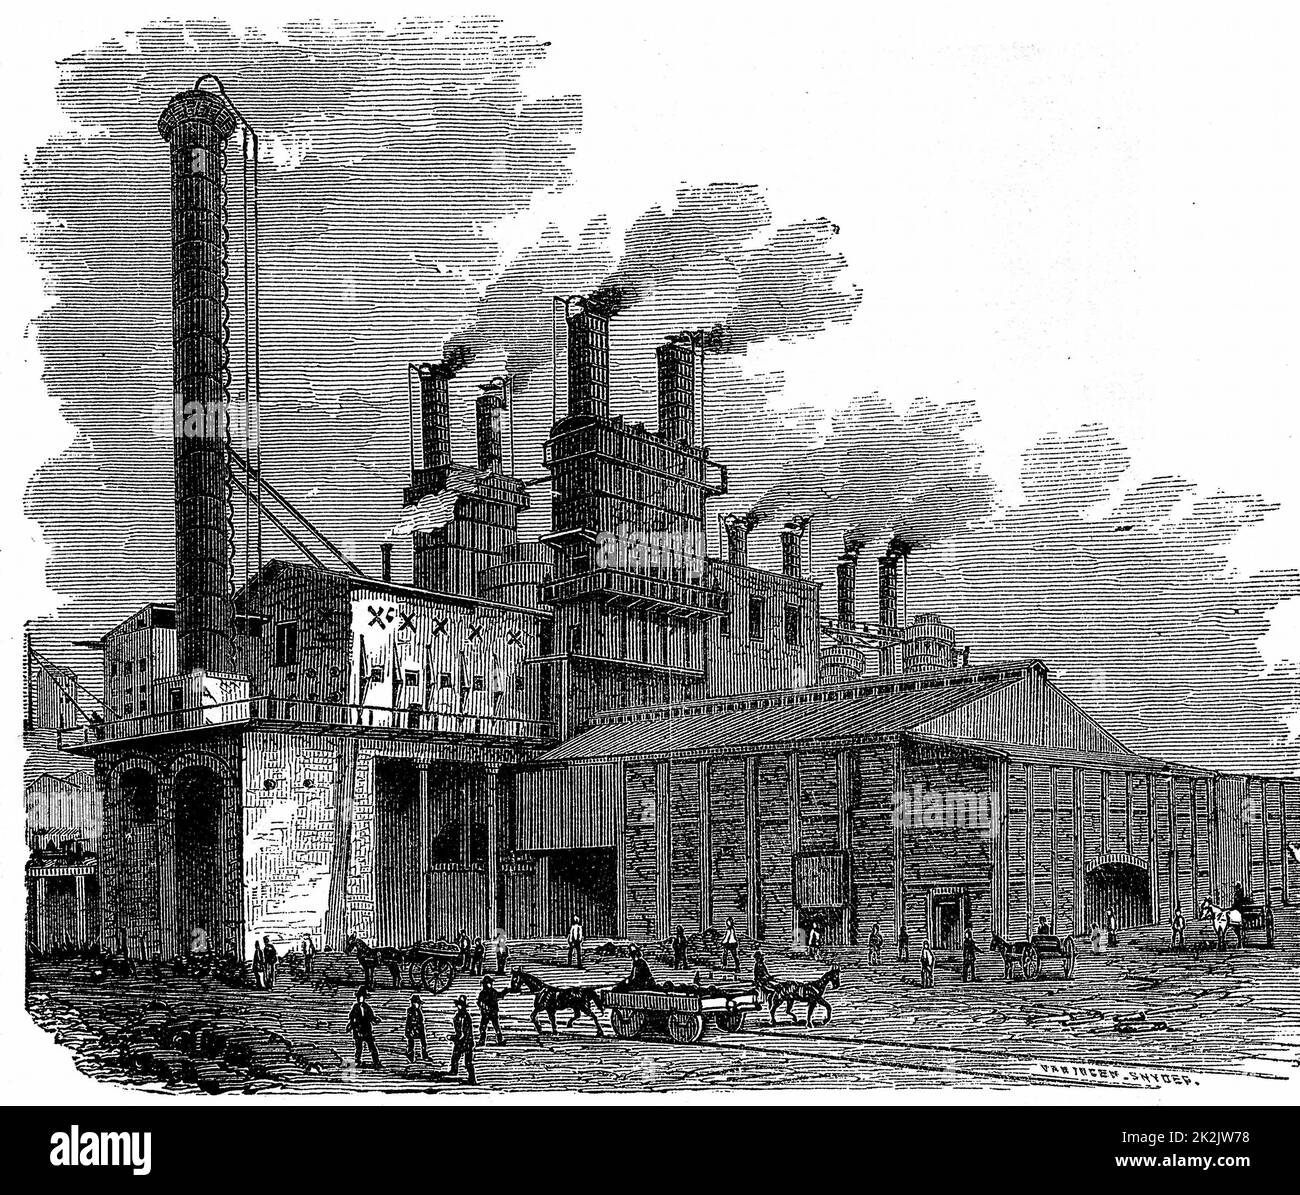 Фабрика 18 века. Промышленная революция в Англии 19 век. Сталелитейный завод в Англии 19 века. Индустриальная революция в Англии 19 век. Великобритания 19 век заводы.